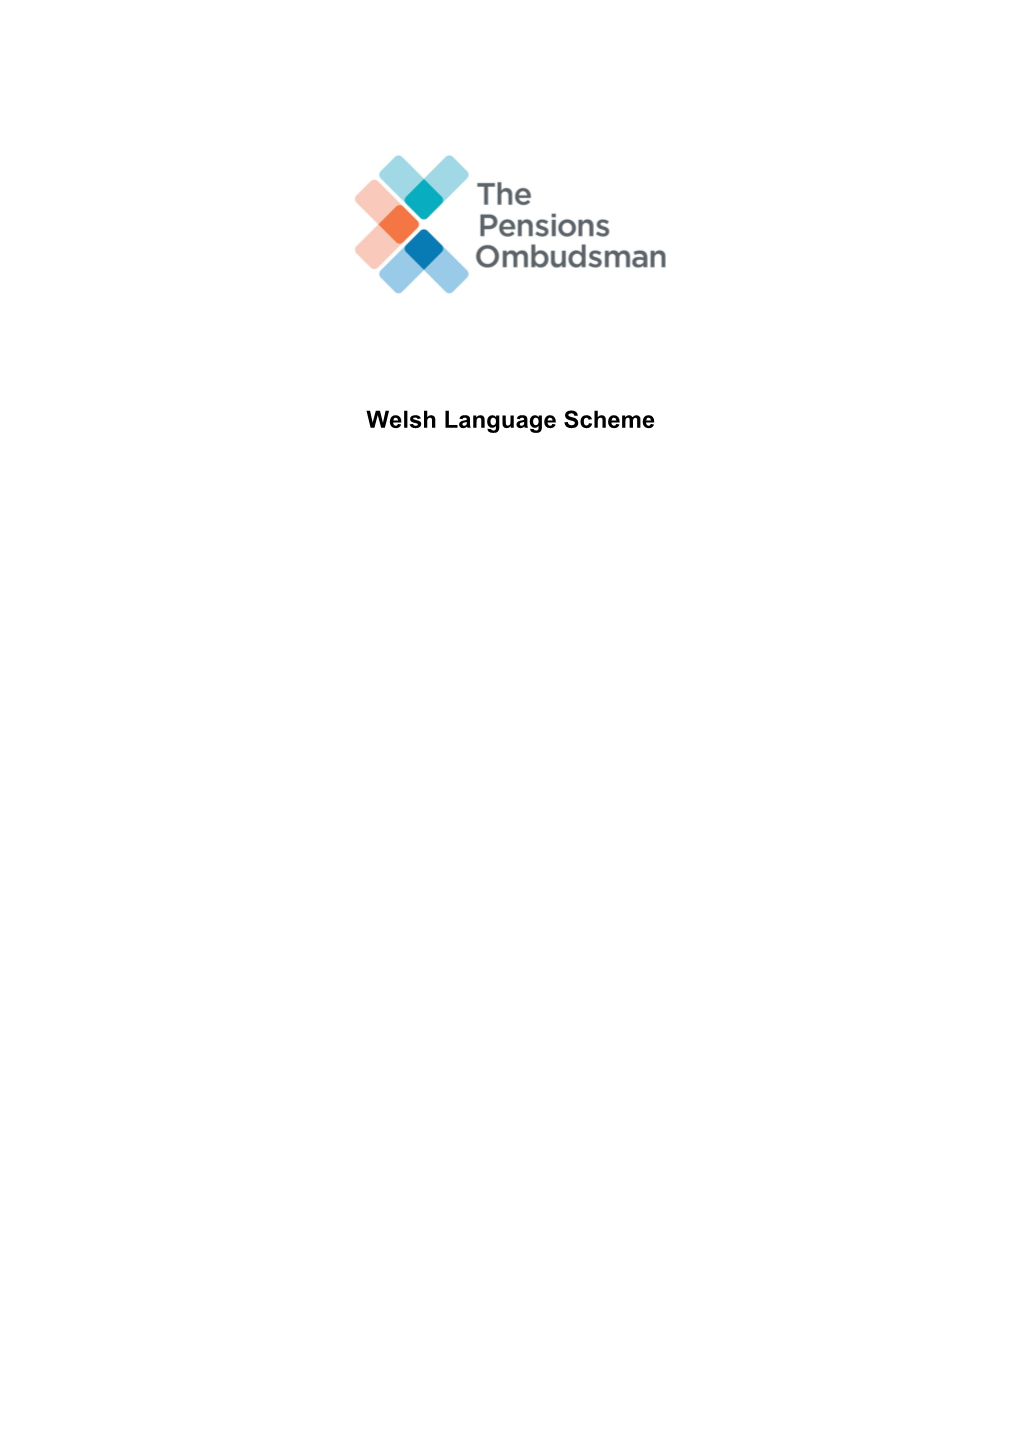 Standard Welsh Language Scheme